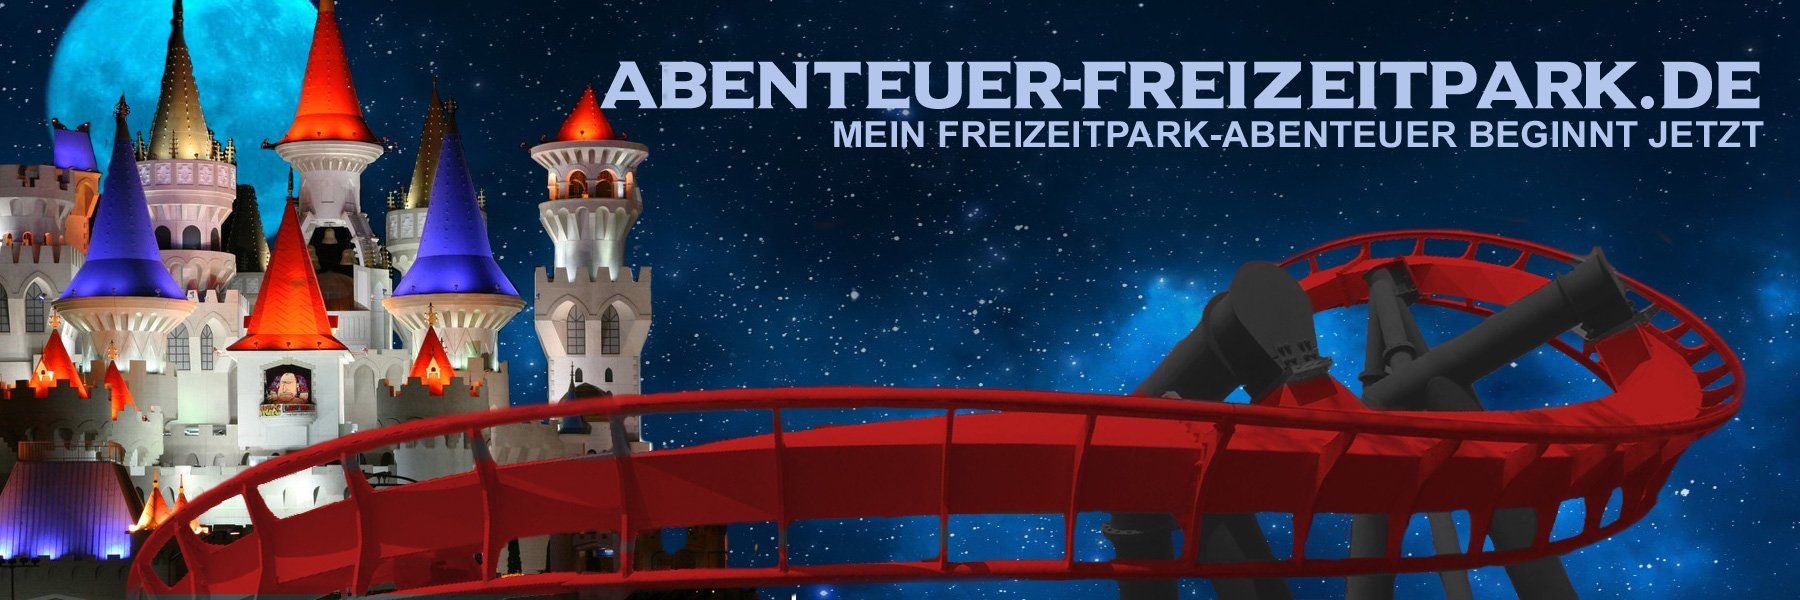 Willkommen bei Abenteuer-Freizeitpark.de. Tauchen Sie in die Welt der Themen- und Freizeitparks und Planen Sie Ihren Besuch jetzt.